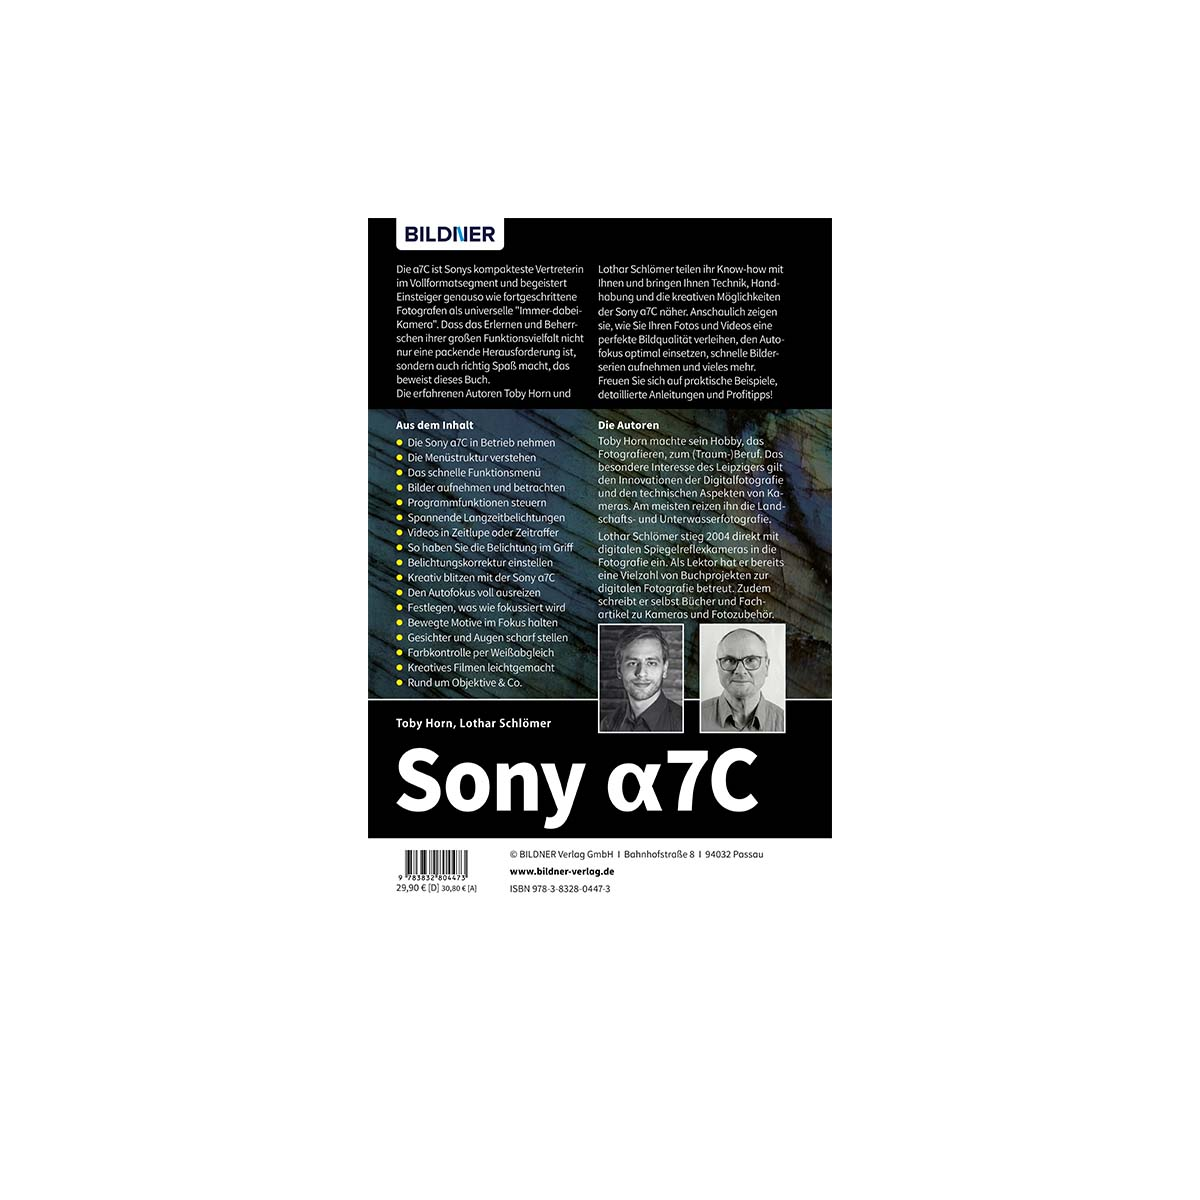 7C - Praxisbuch Ihrer umfangreiche Sony alpha Das Kamera! zu